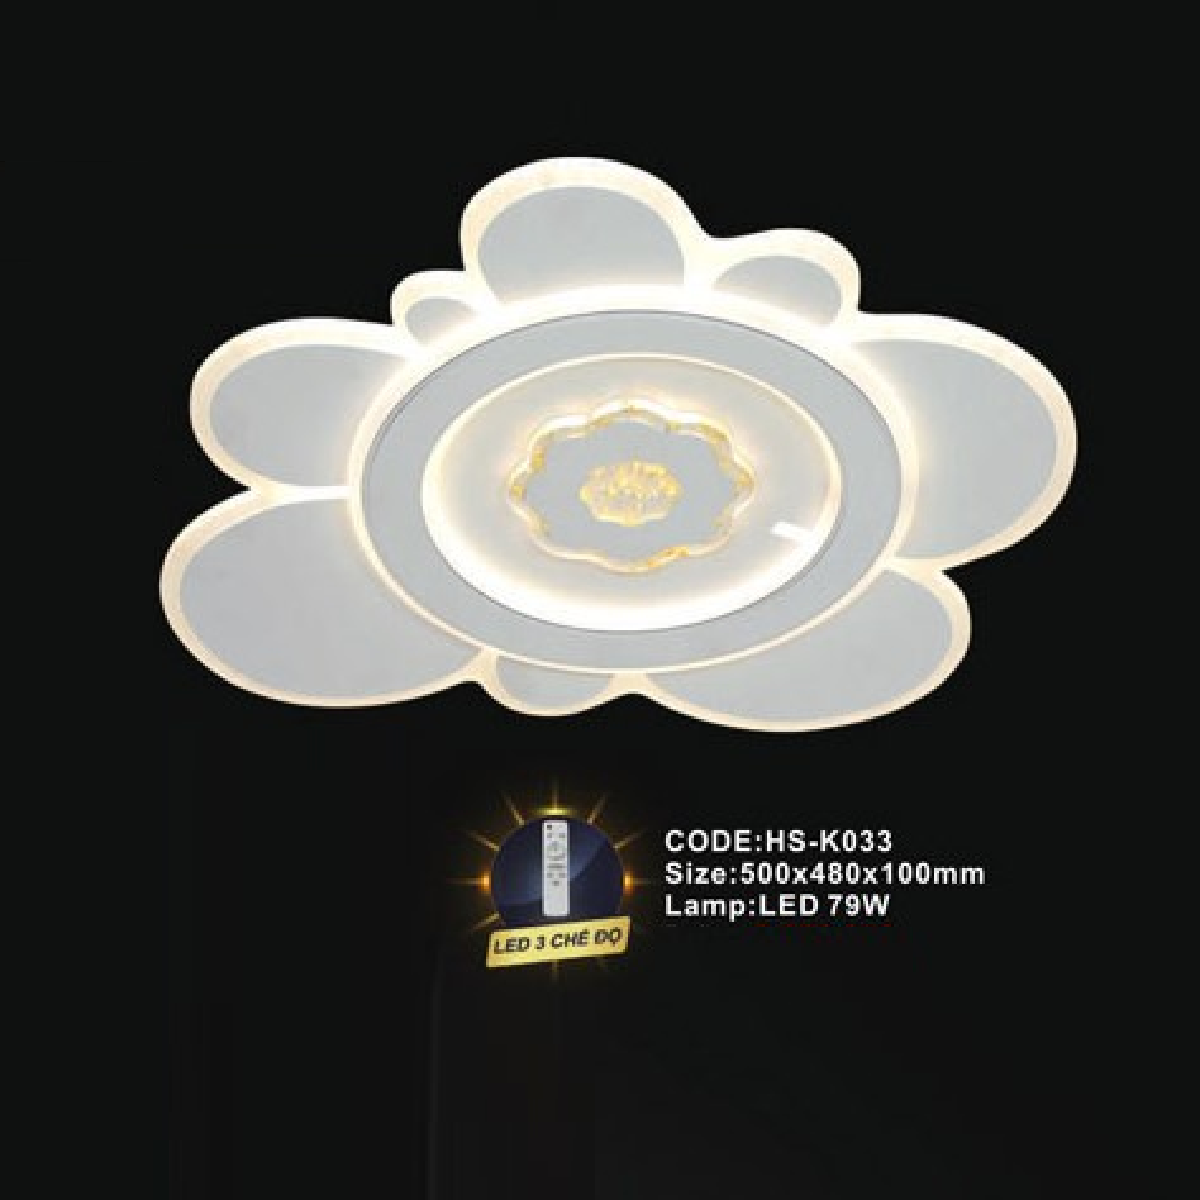 CODE: HS - K033: Đèn áp ttần LED MIca - KT: 500mm x 400mm x100mm - Đèn LED 79W ánh sáng đổi 3 màu